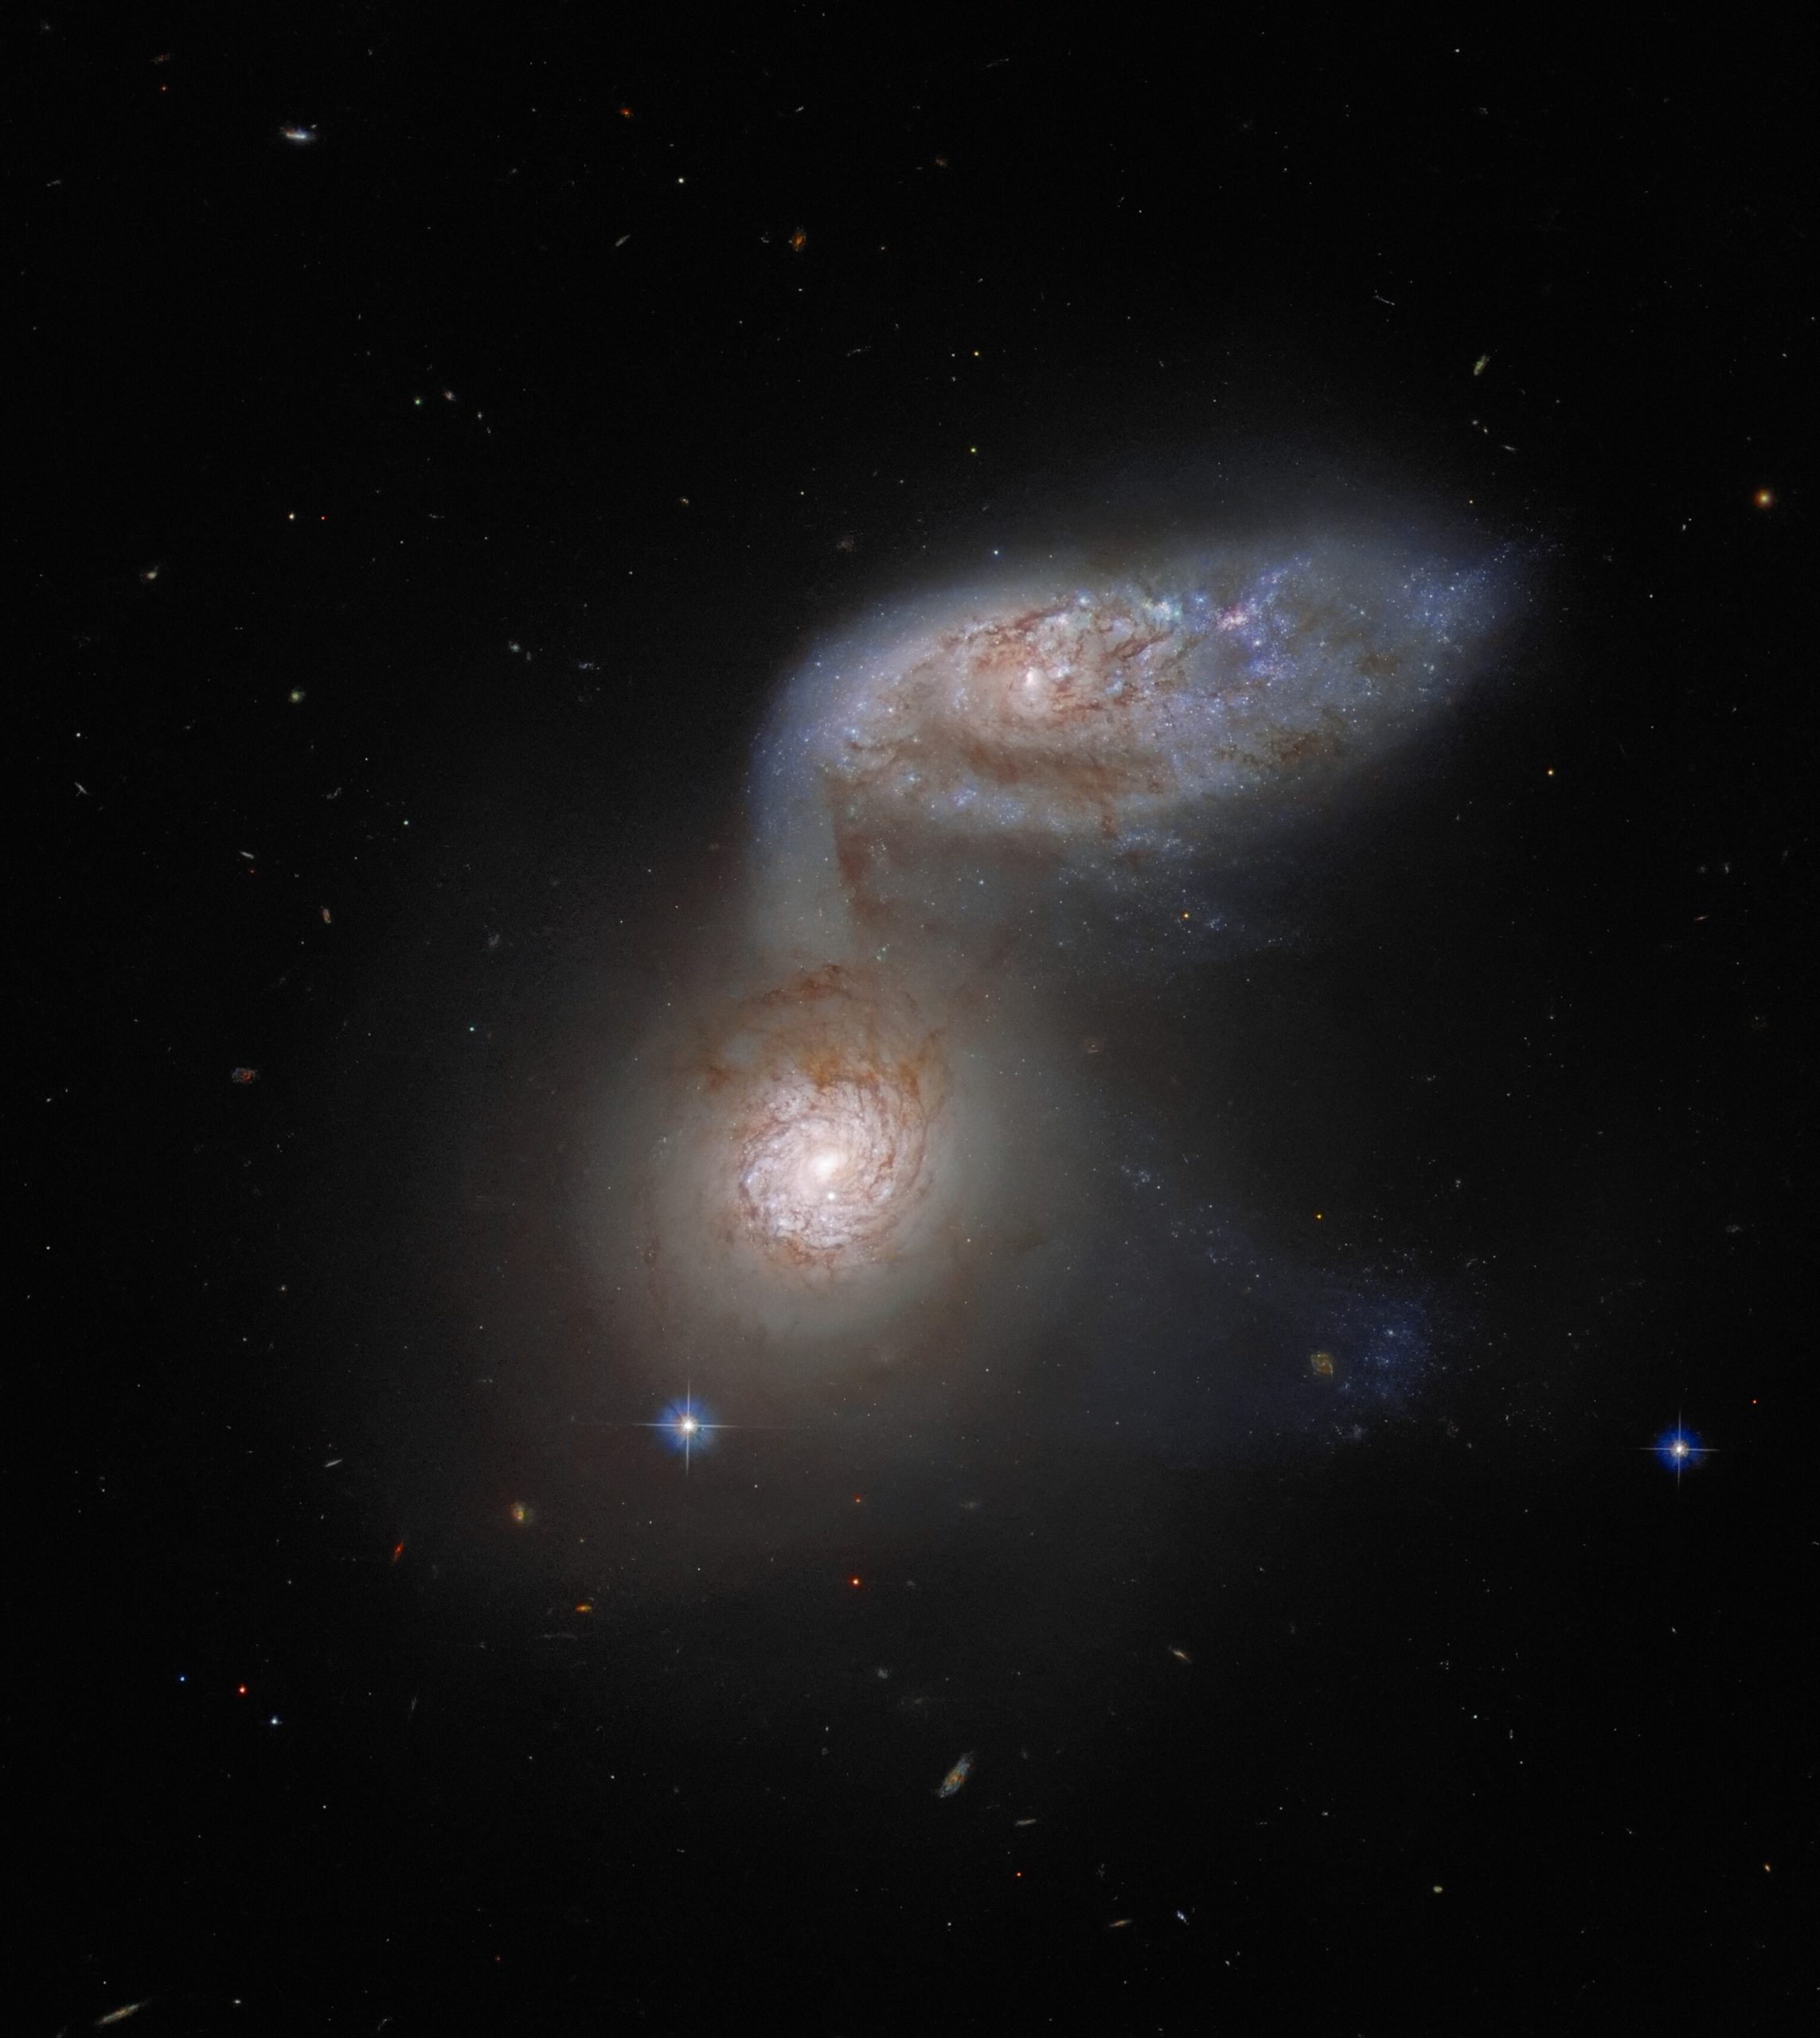 Еще один интересный пример взаимодействующих галактик на ноябрьском снимке - галактики NGC 5953 и NGC 5954, известные под общим названием «Апрель 91». Фото: ESA / Hubble & NASA, J. Dalcanton